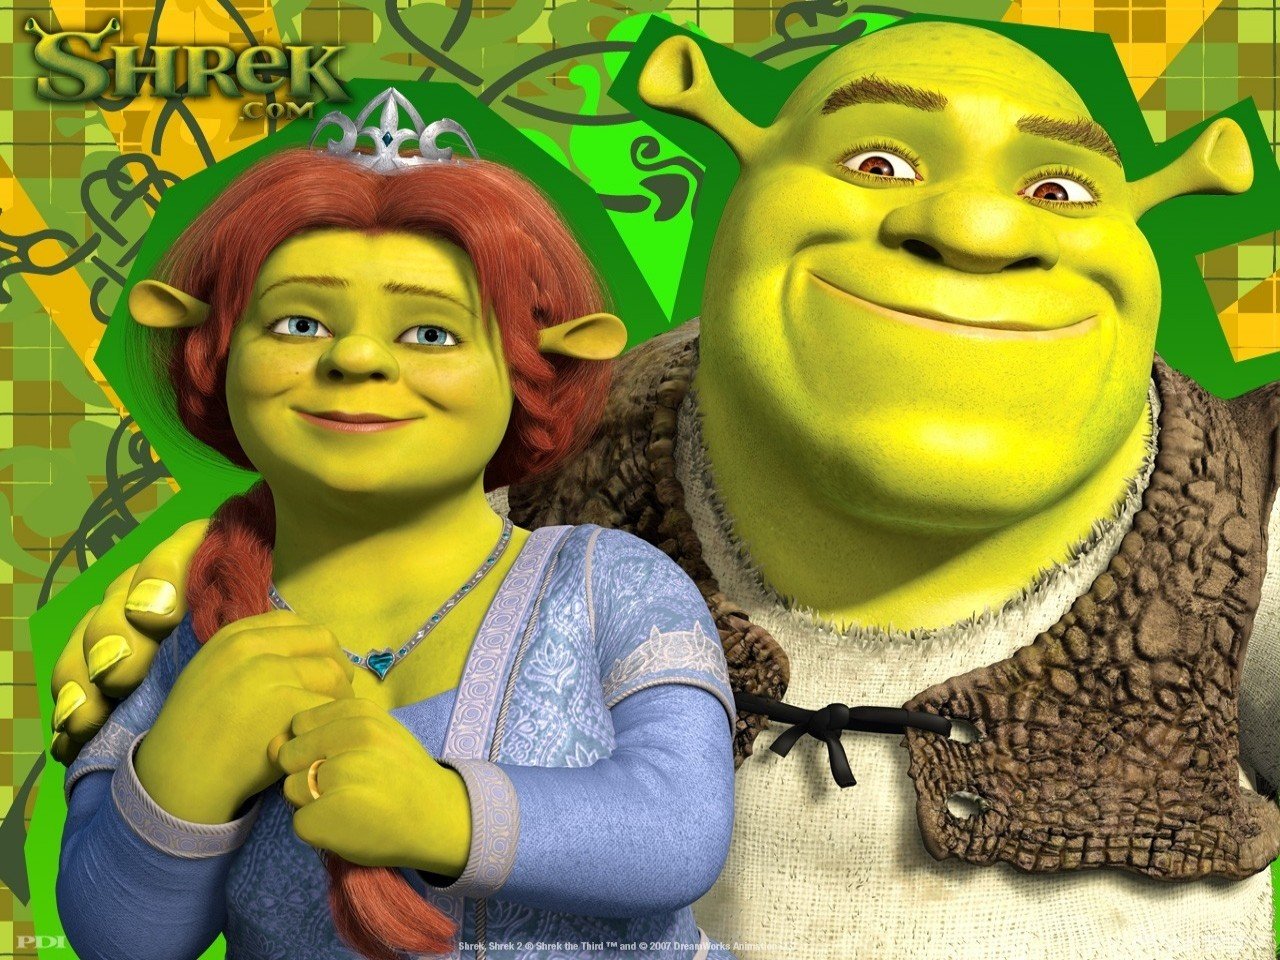 Free download FONDITOS Shrek Fiona Peliculas Shrek filmes [1280x960] for your Desktop, Mobile & Tablet. Explore Fiona Wallpaper Shrek 2. Shrek Wallpaper, Shrek Wallpaper, Shrek 4 Wallpaper